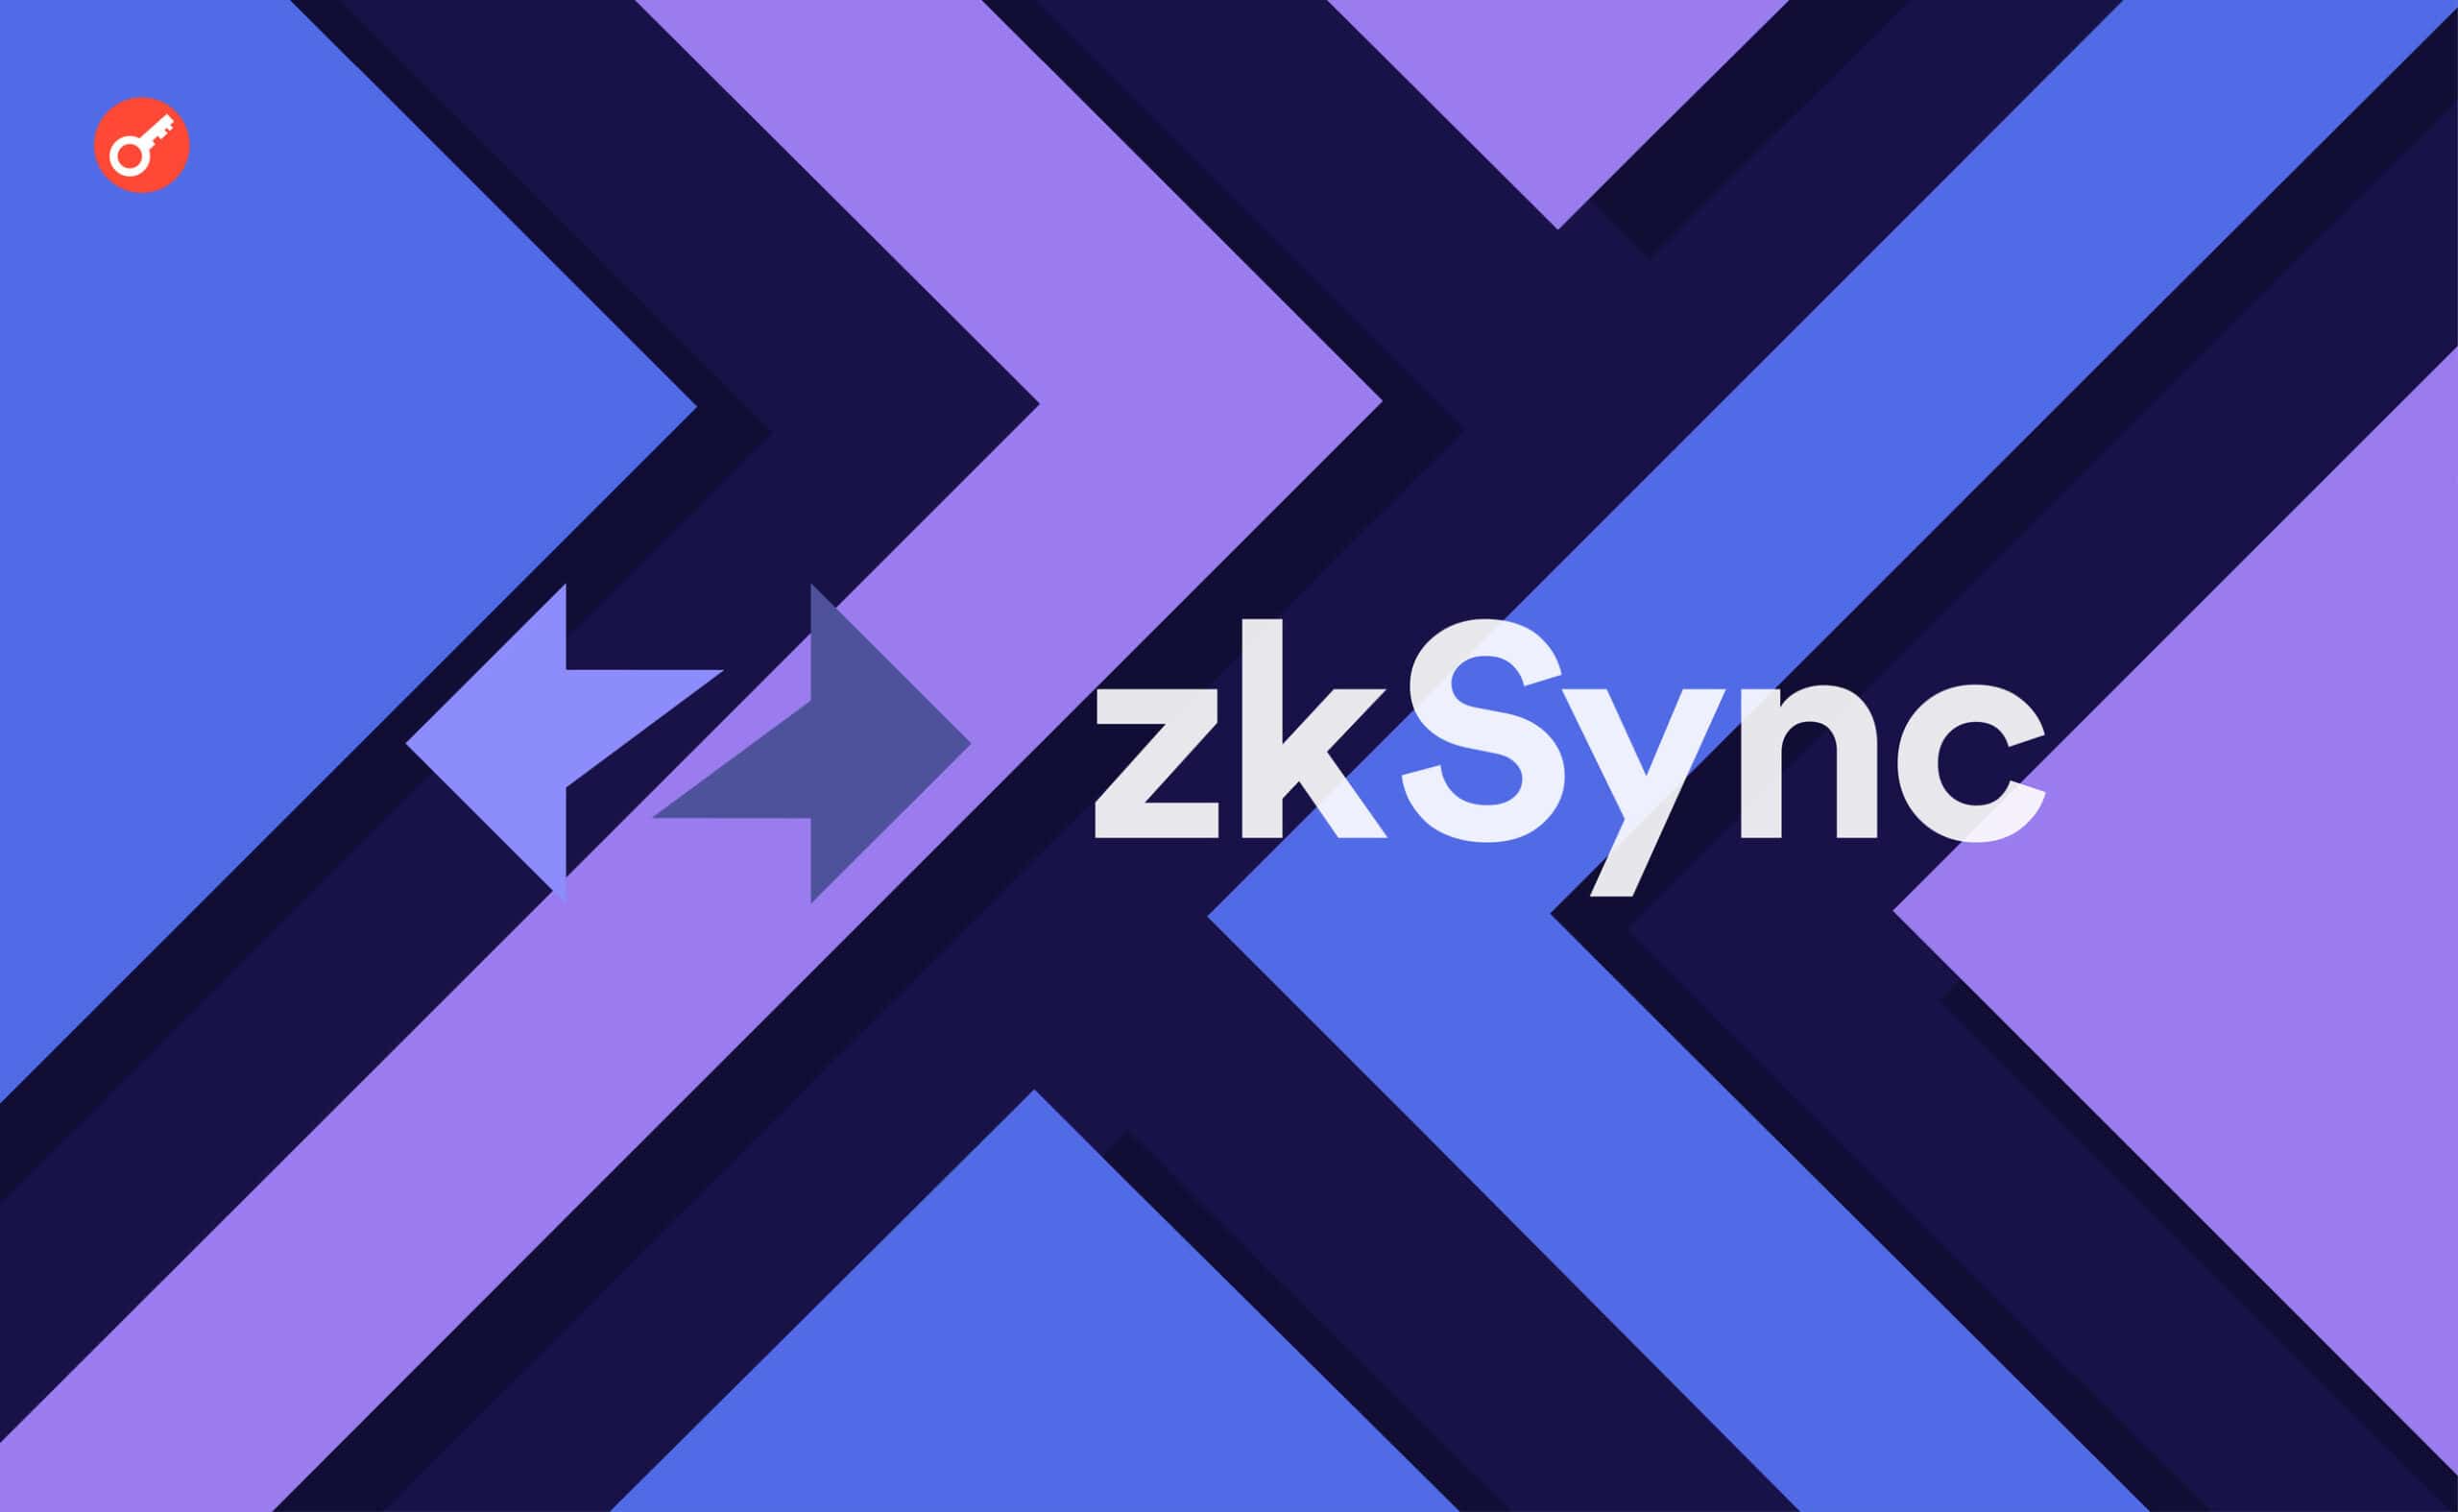 zkSync 2.0 запускает основную сеть и переименовывается в zkSync Era. Заглавный коллаж новости.